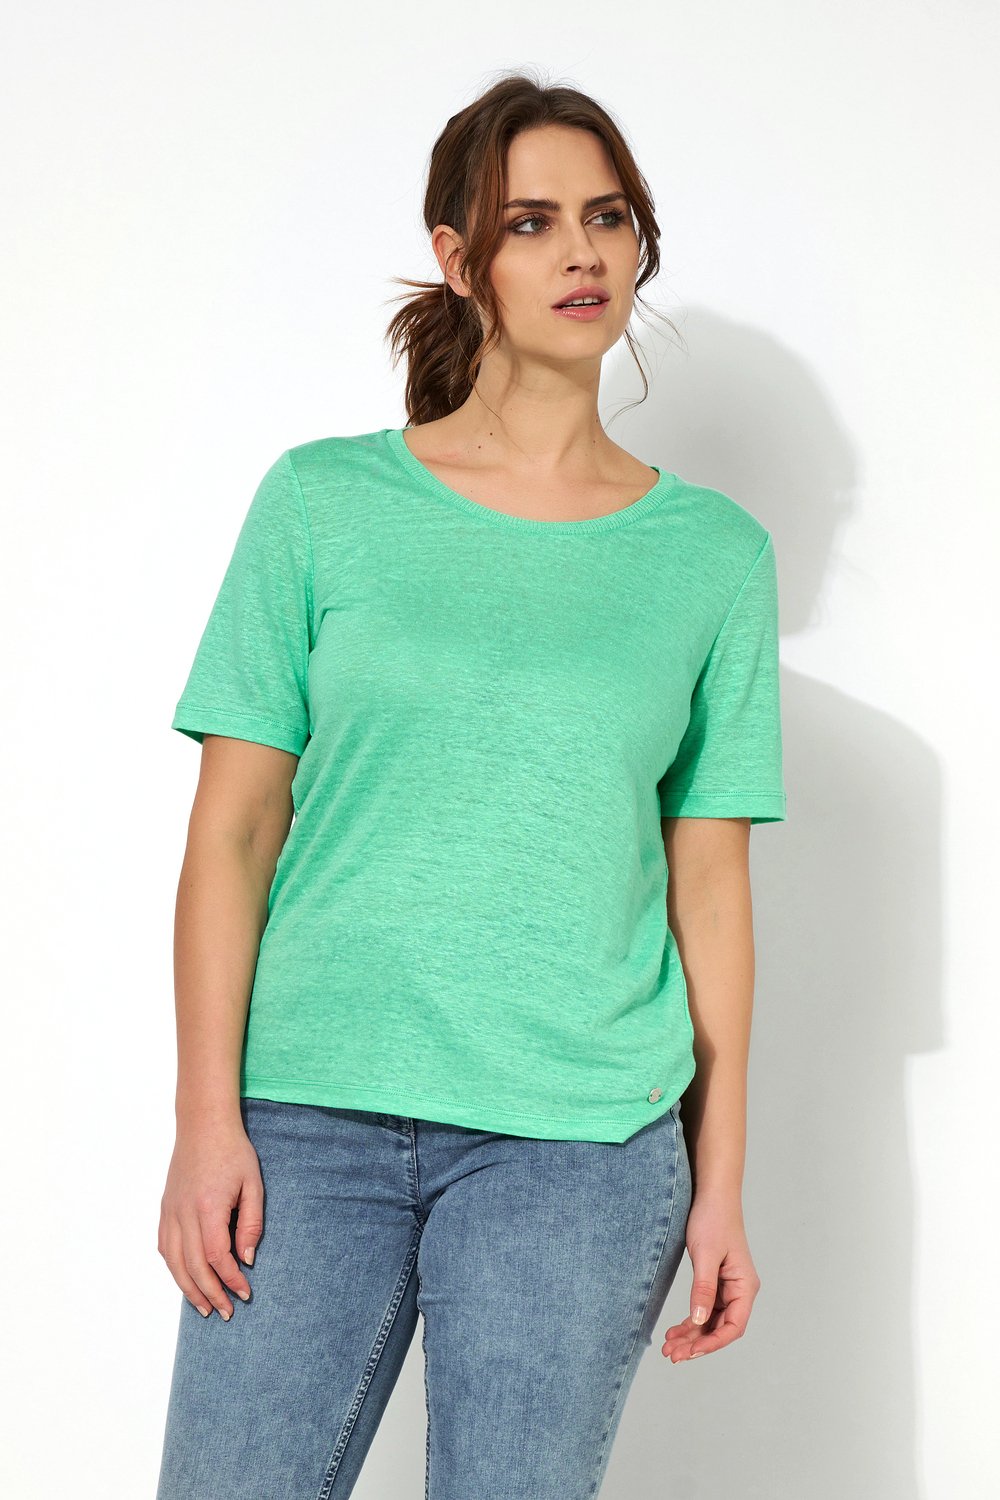 Bequemes Shirt aus Leinen | Style »Esra« green